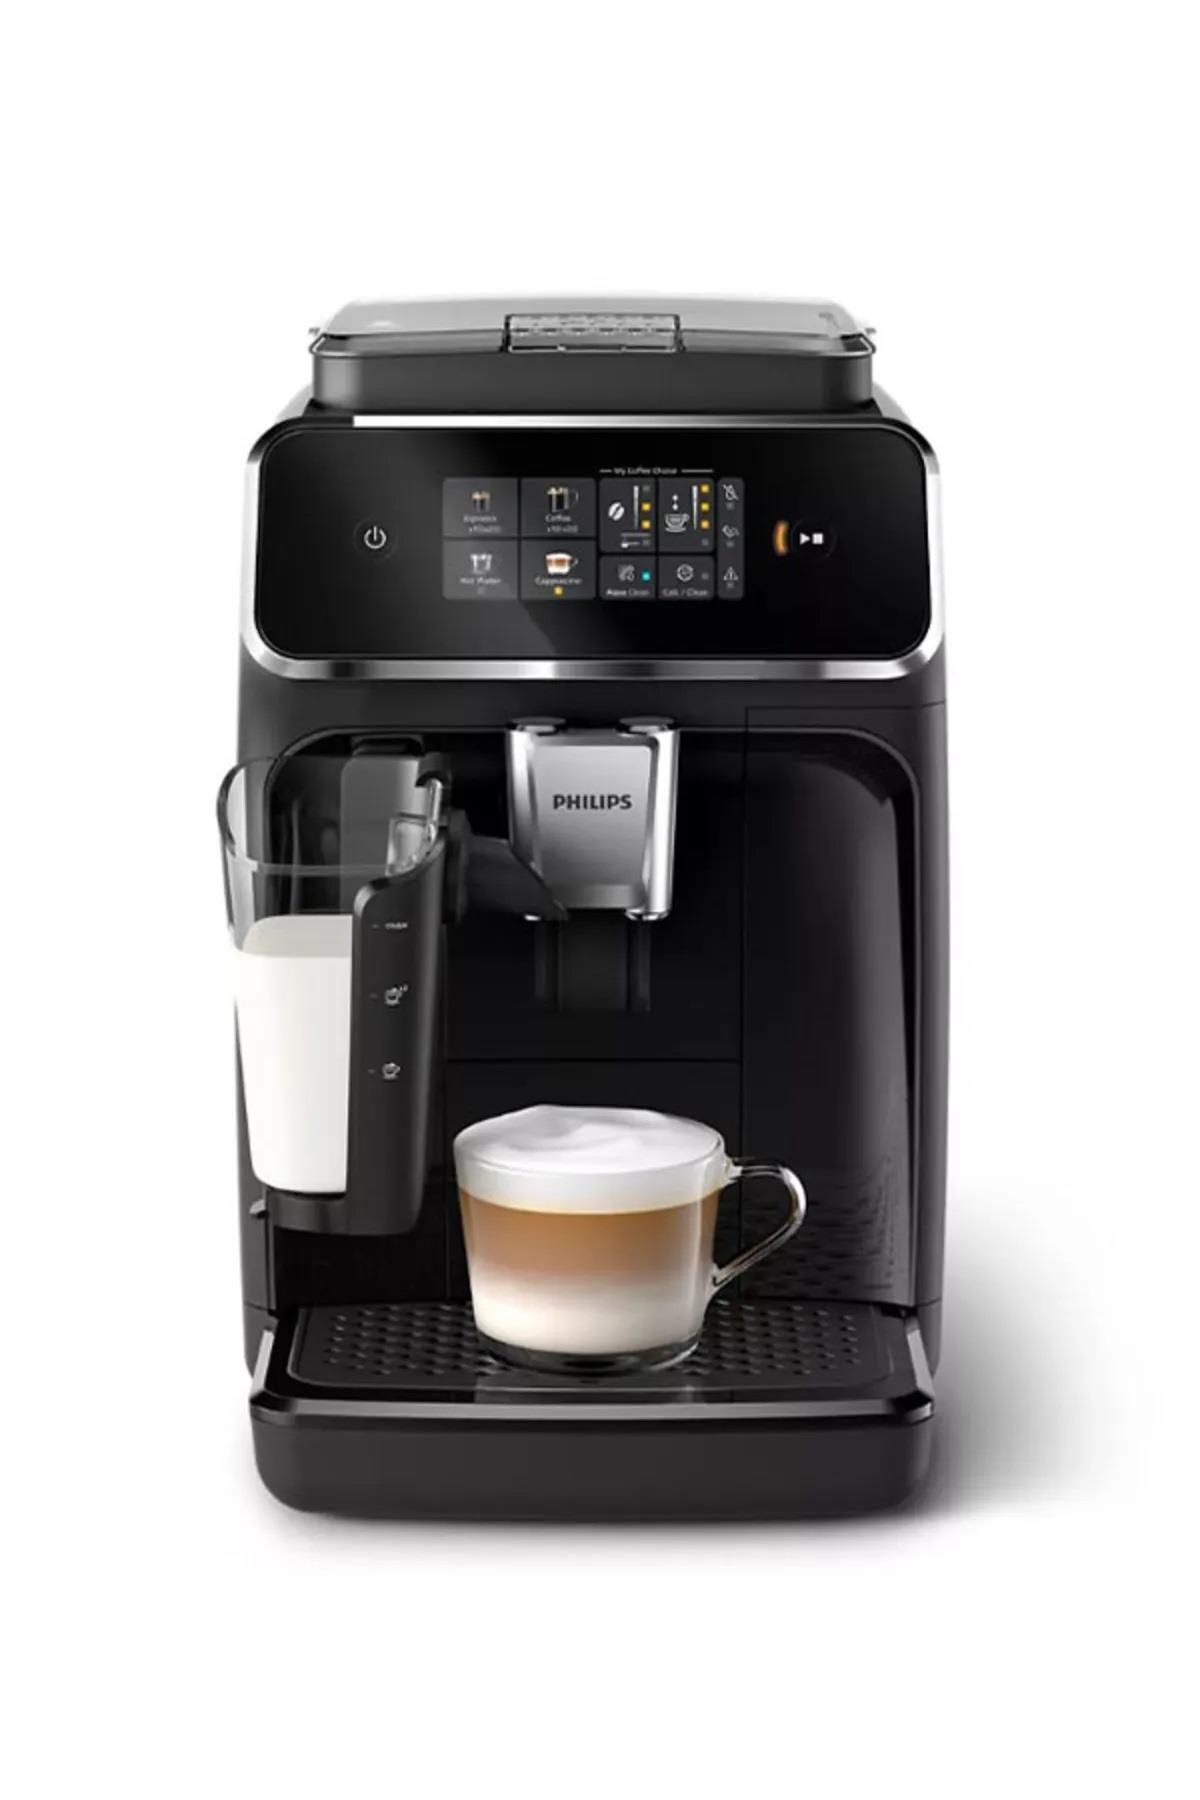 Philips Ep2331/10 Lattego Tam Otomatik Espresso Makinesi, Tek Dokunuşla 4 Çeşit Içecek